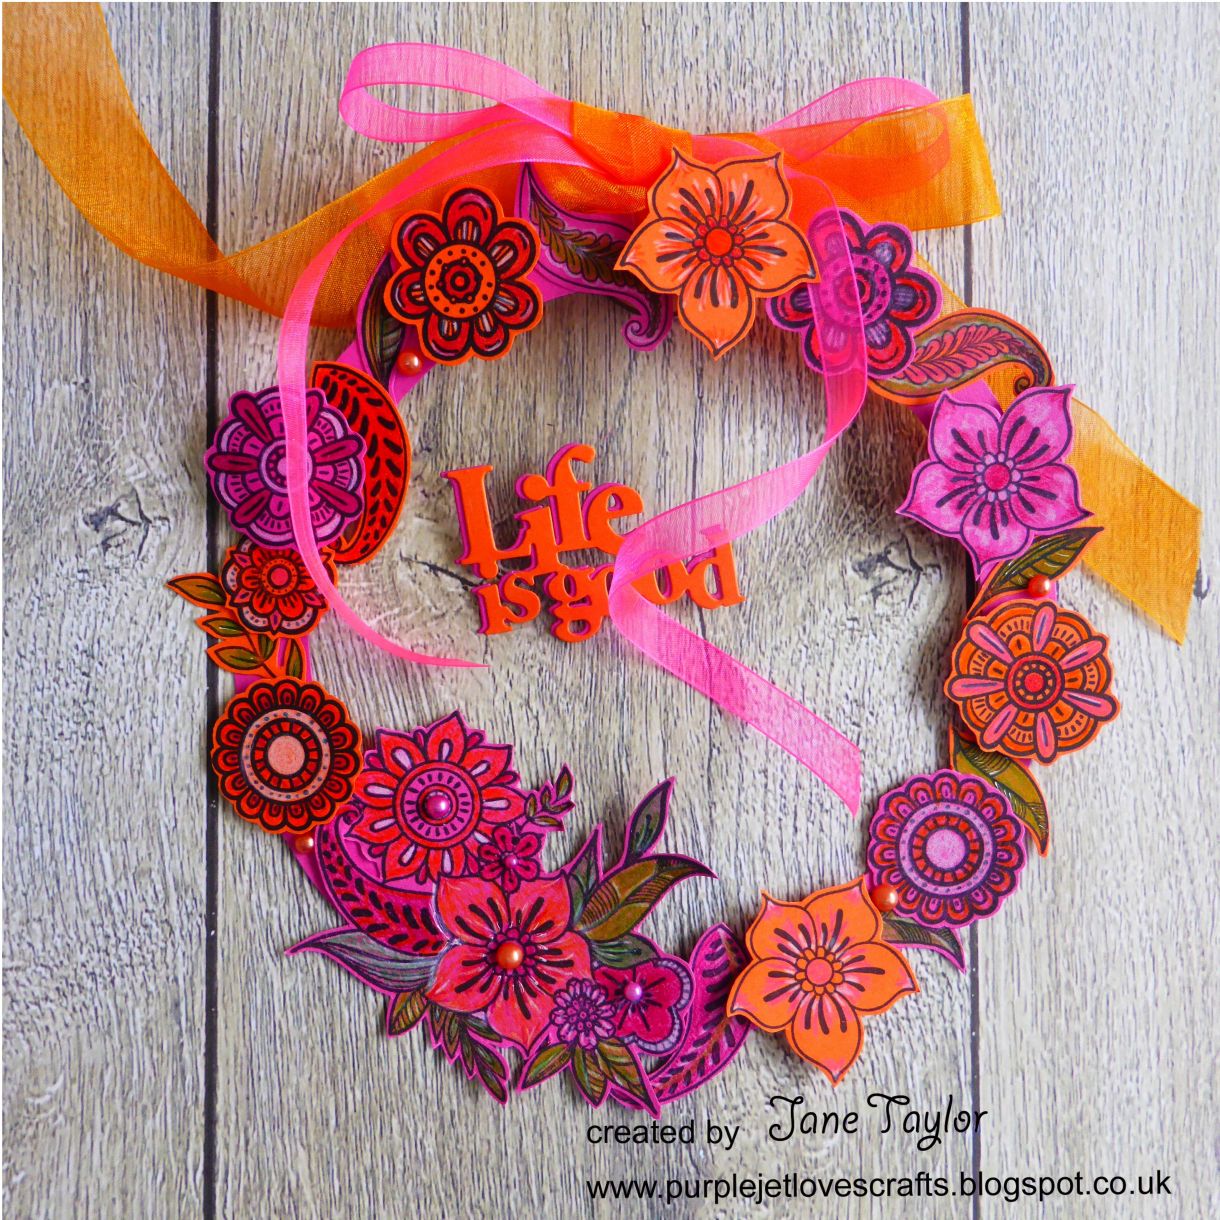 Jane Orange Pink Wreath 6